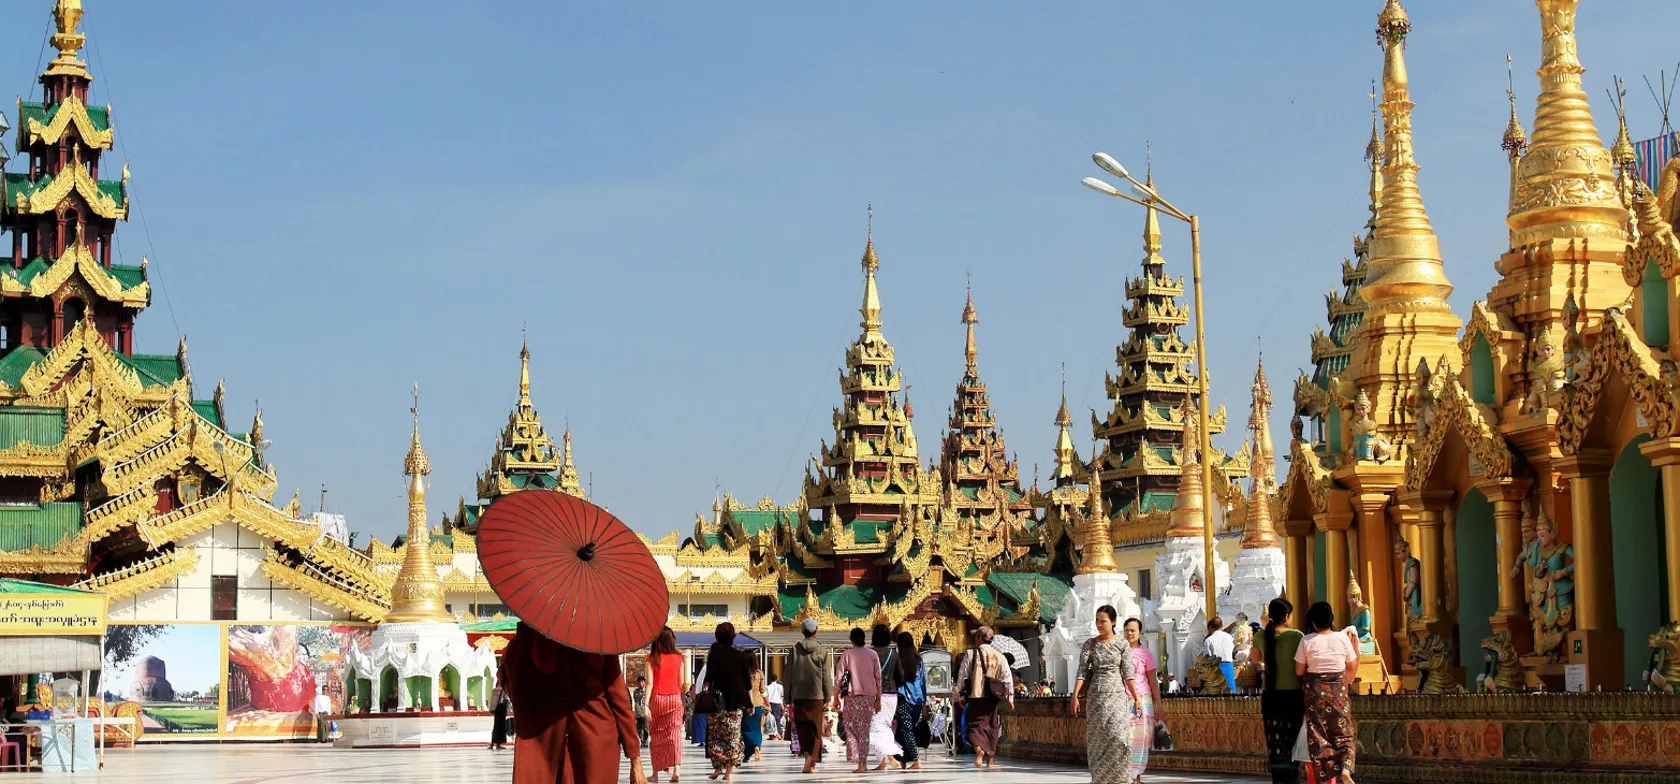 Munk besøger Shwedagon-pagoden i Yangon. Foto Anders Stoustrup